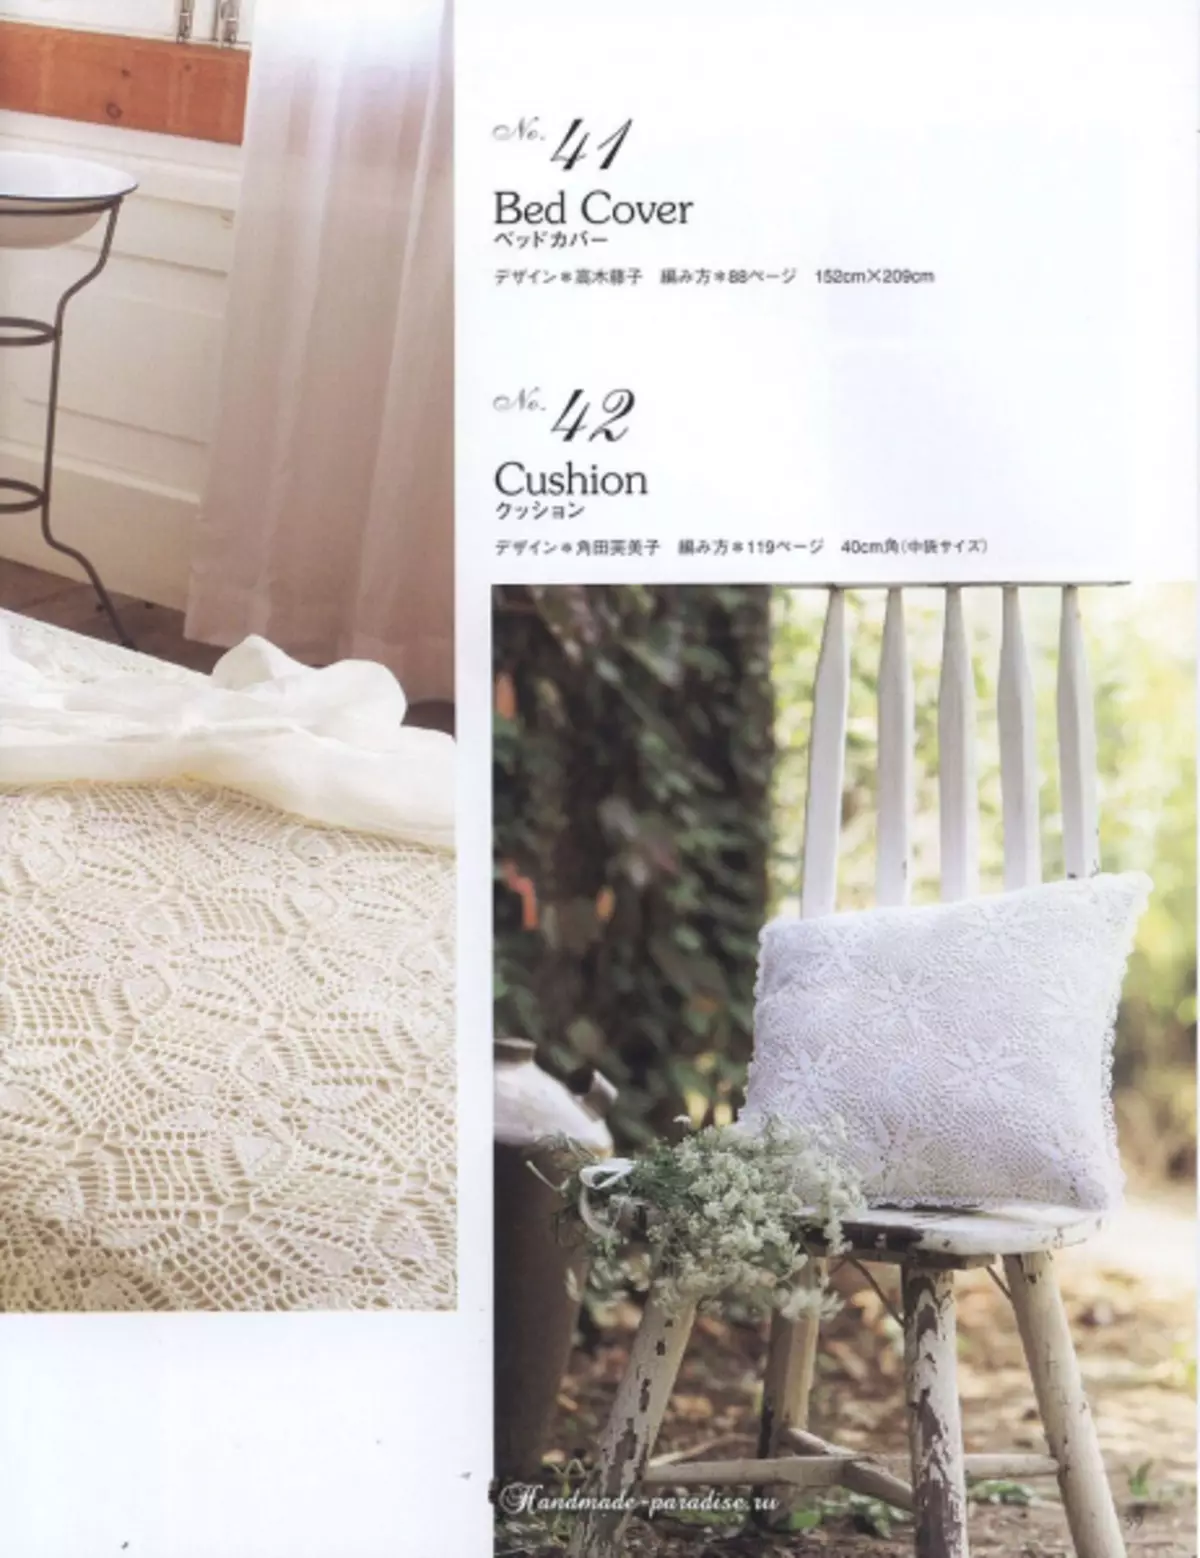 ວາລະສານ Crochet Lace Stace ປີ 2019 - ຜ້າເຊັດໂຕແລະຜ້າປູໂຕະ crochet